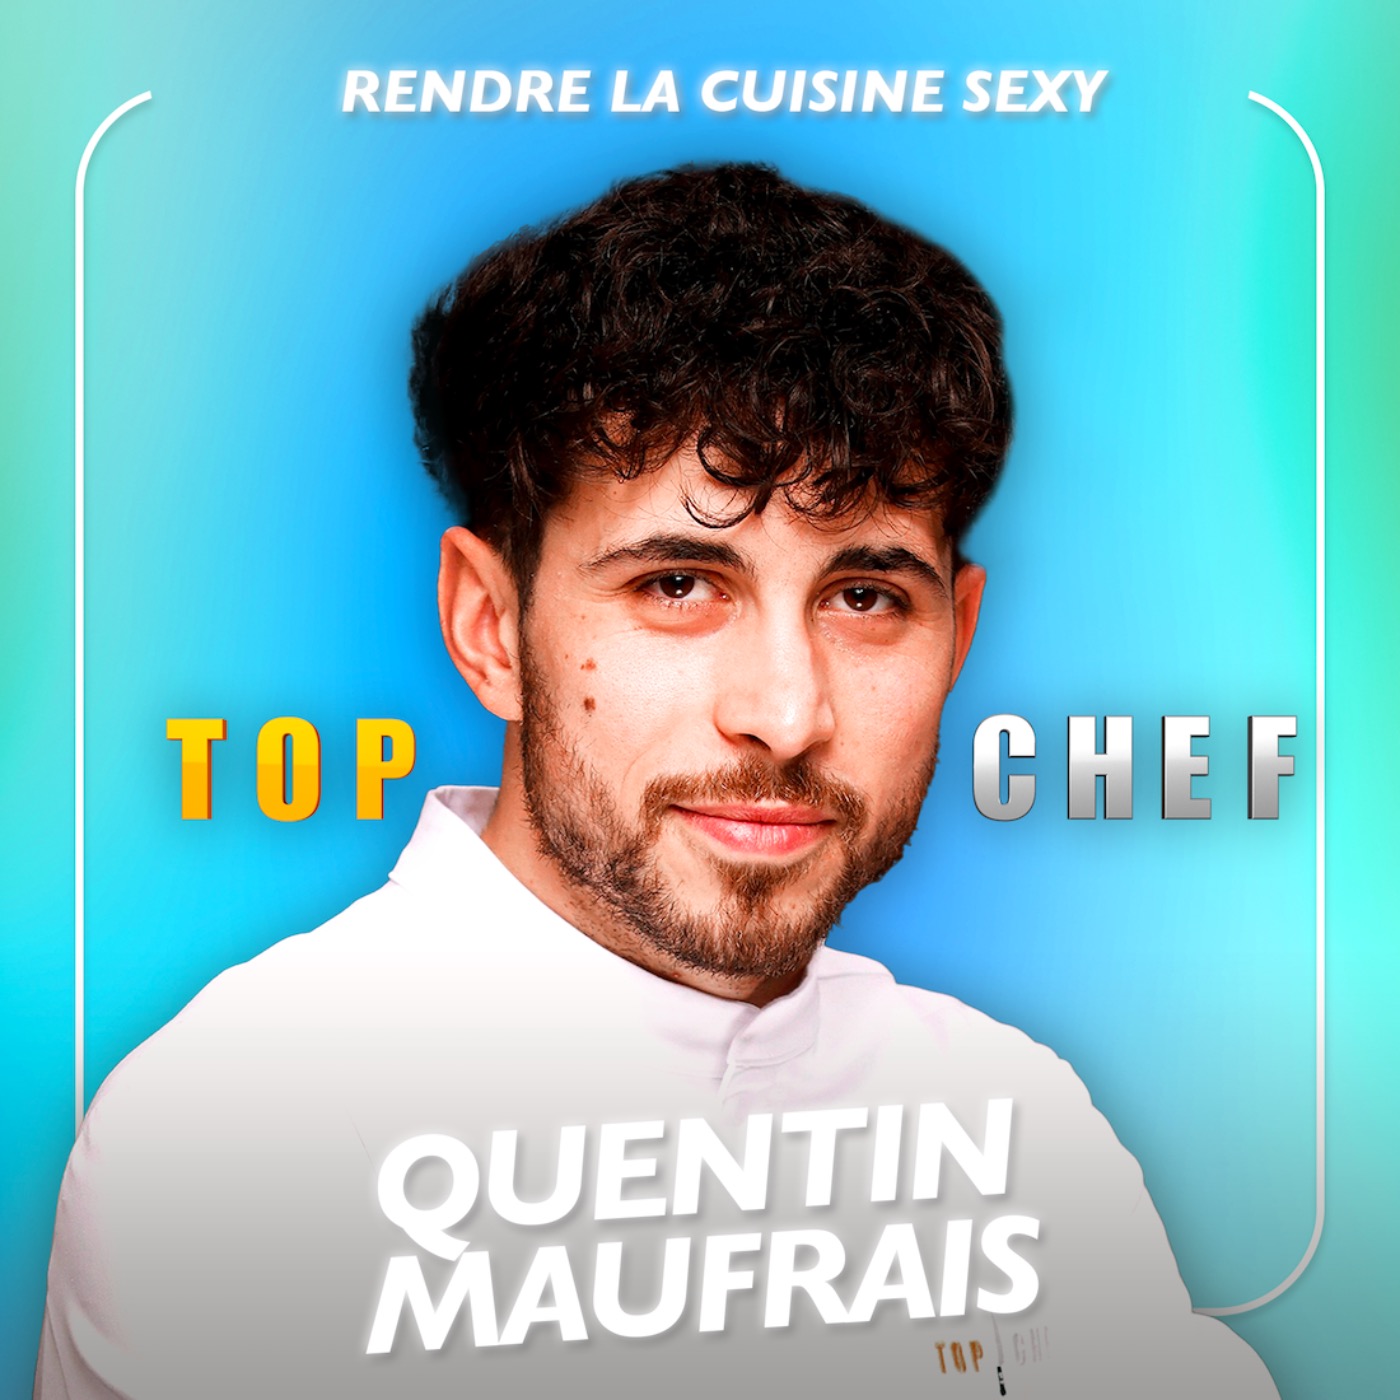 [SPÉCIALE TOP CHEF] Rendre la cuisine sexy avec le candidat de Top Chef Quentin Maufrais